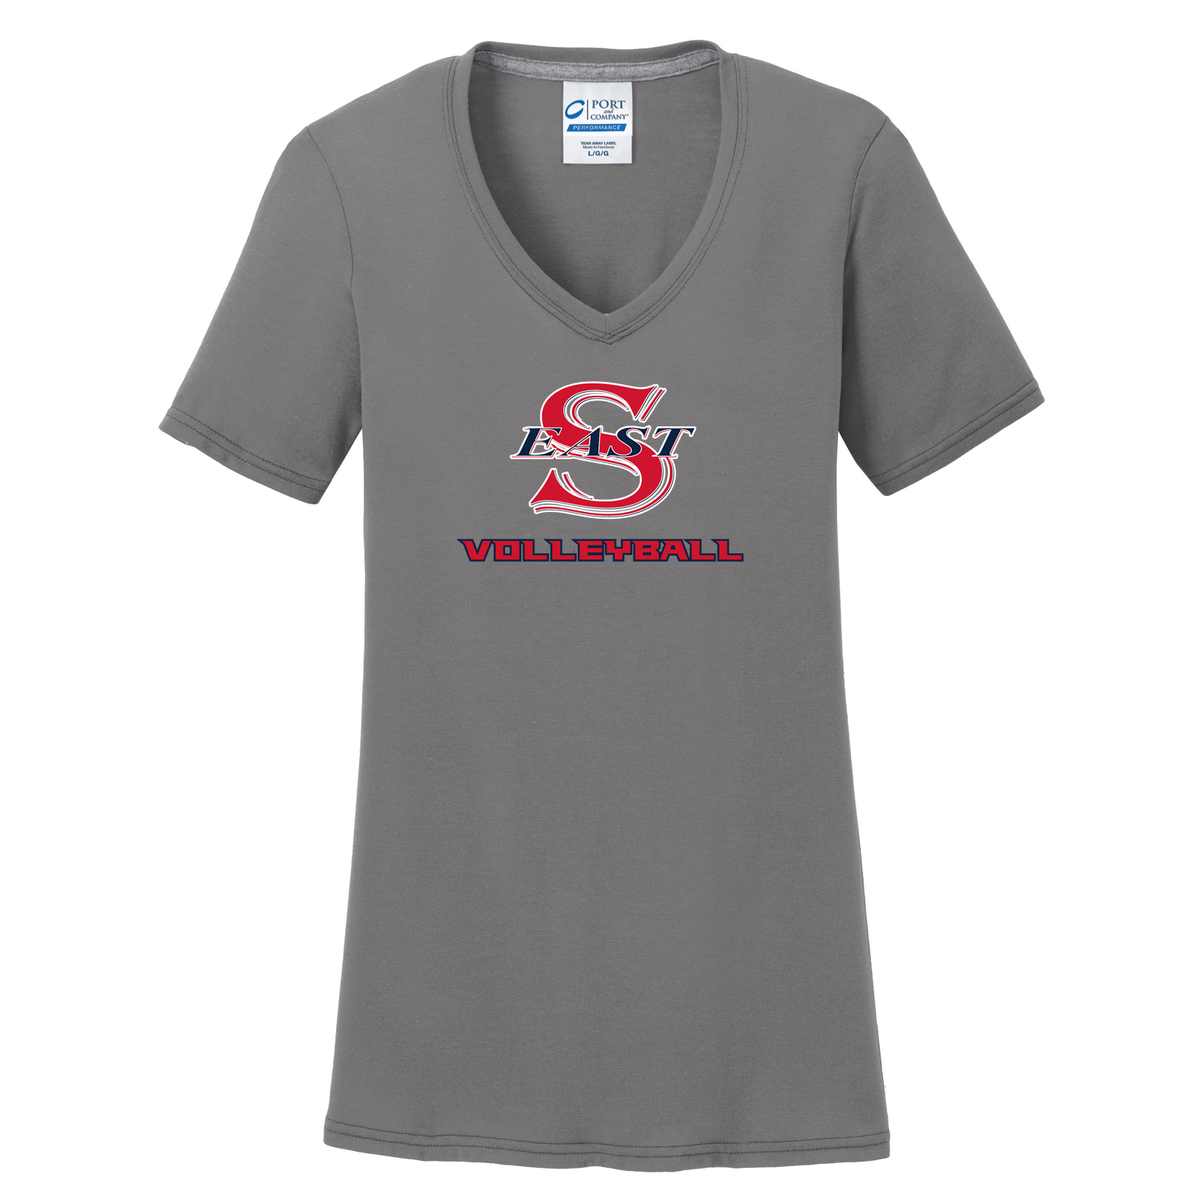 Smithtown East Volleyball Women's T-Shirt